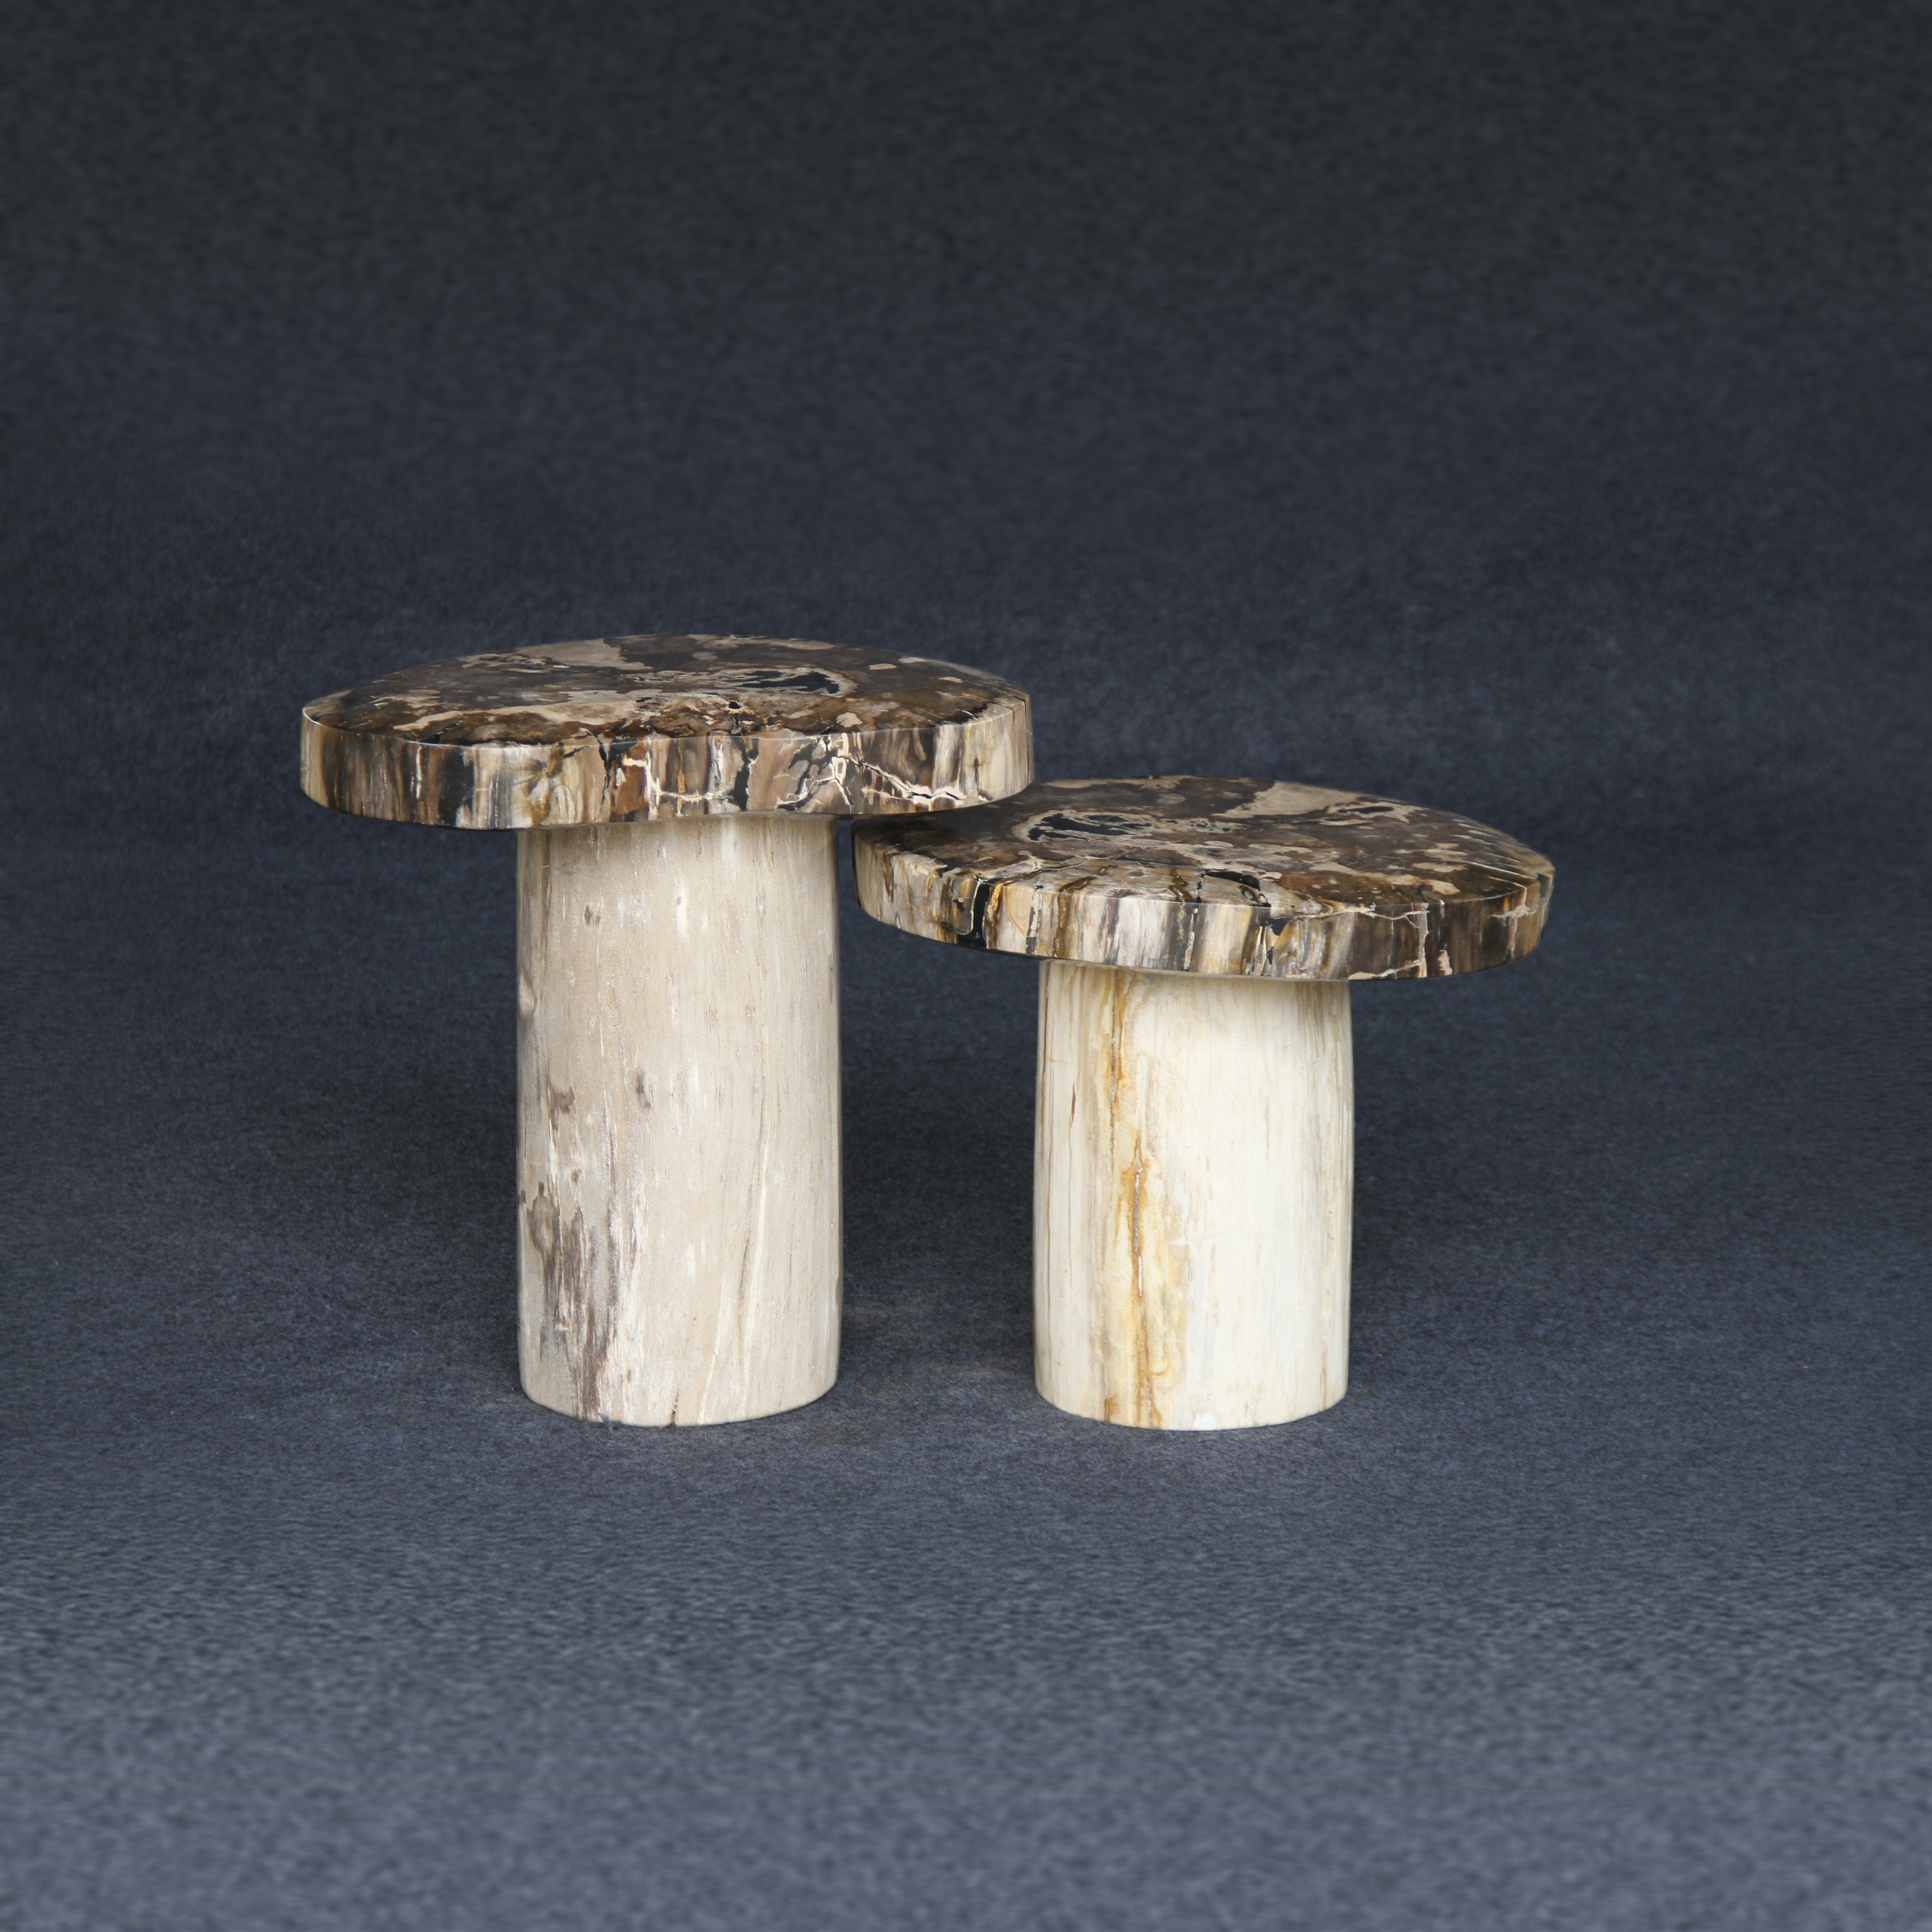 Kalifano Petrified Wood Petrified Wood Mushroom Side (Table A) 19" / 115 lbs PWMT8800.005